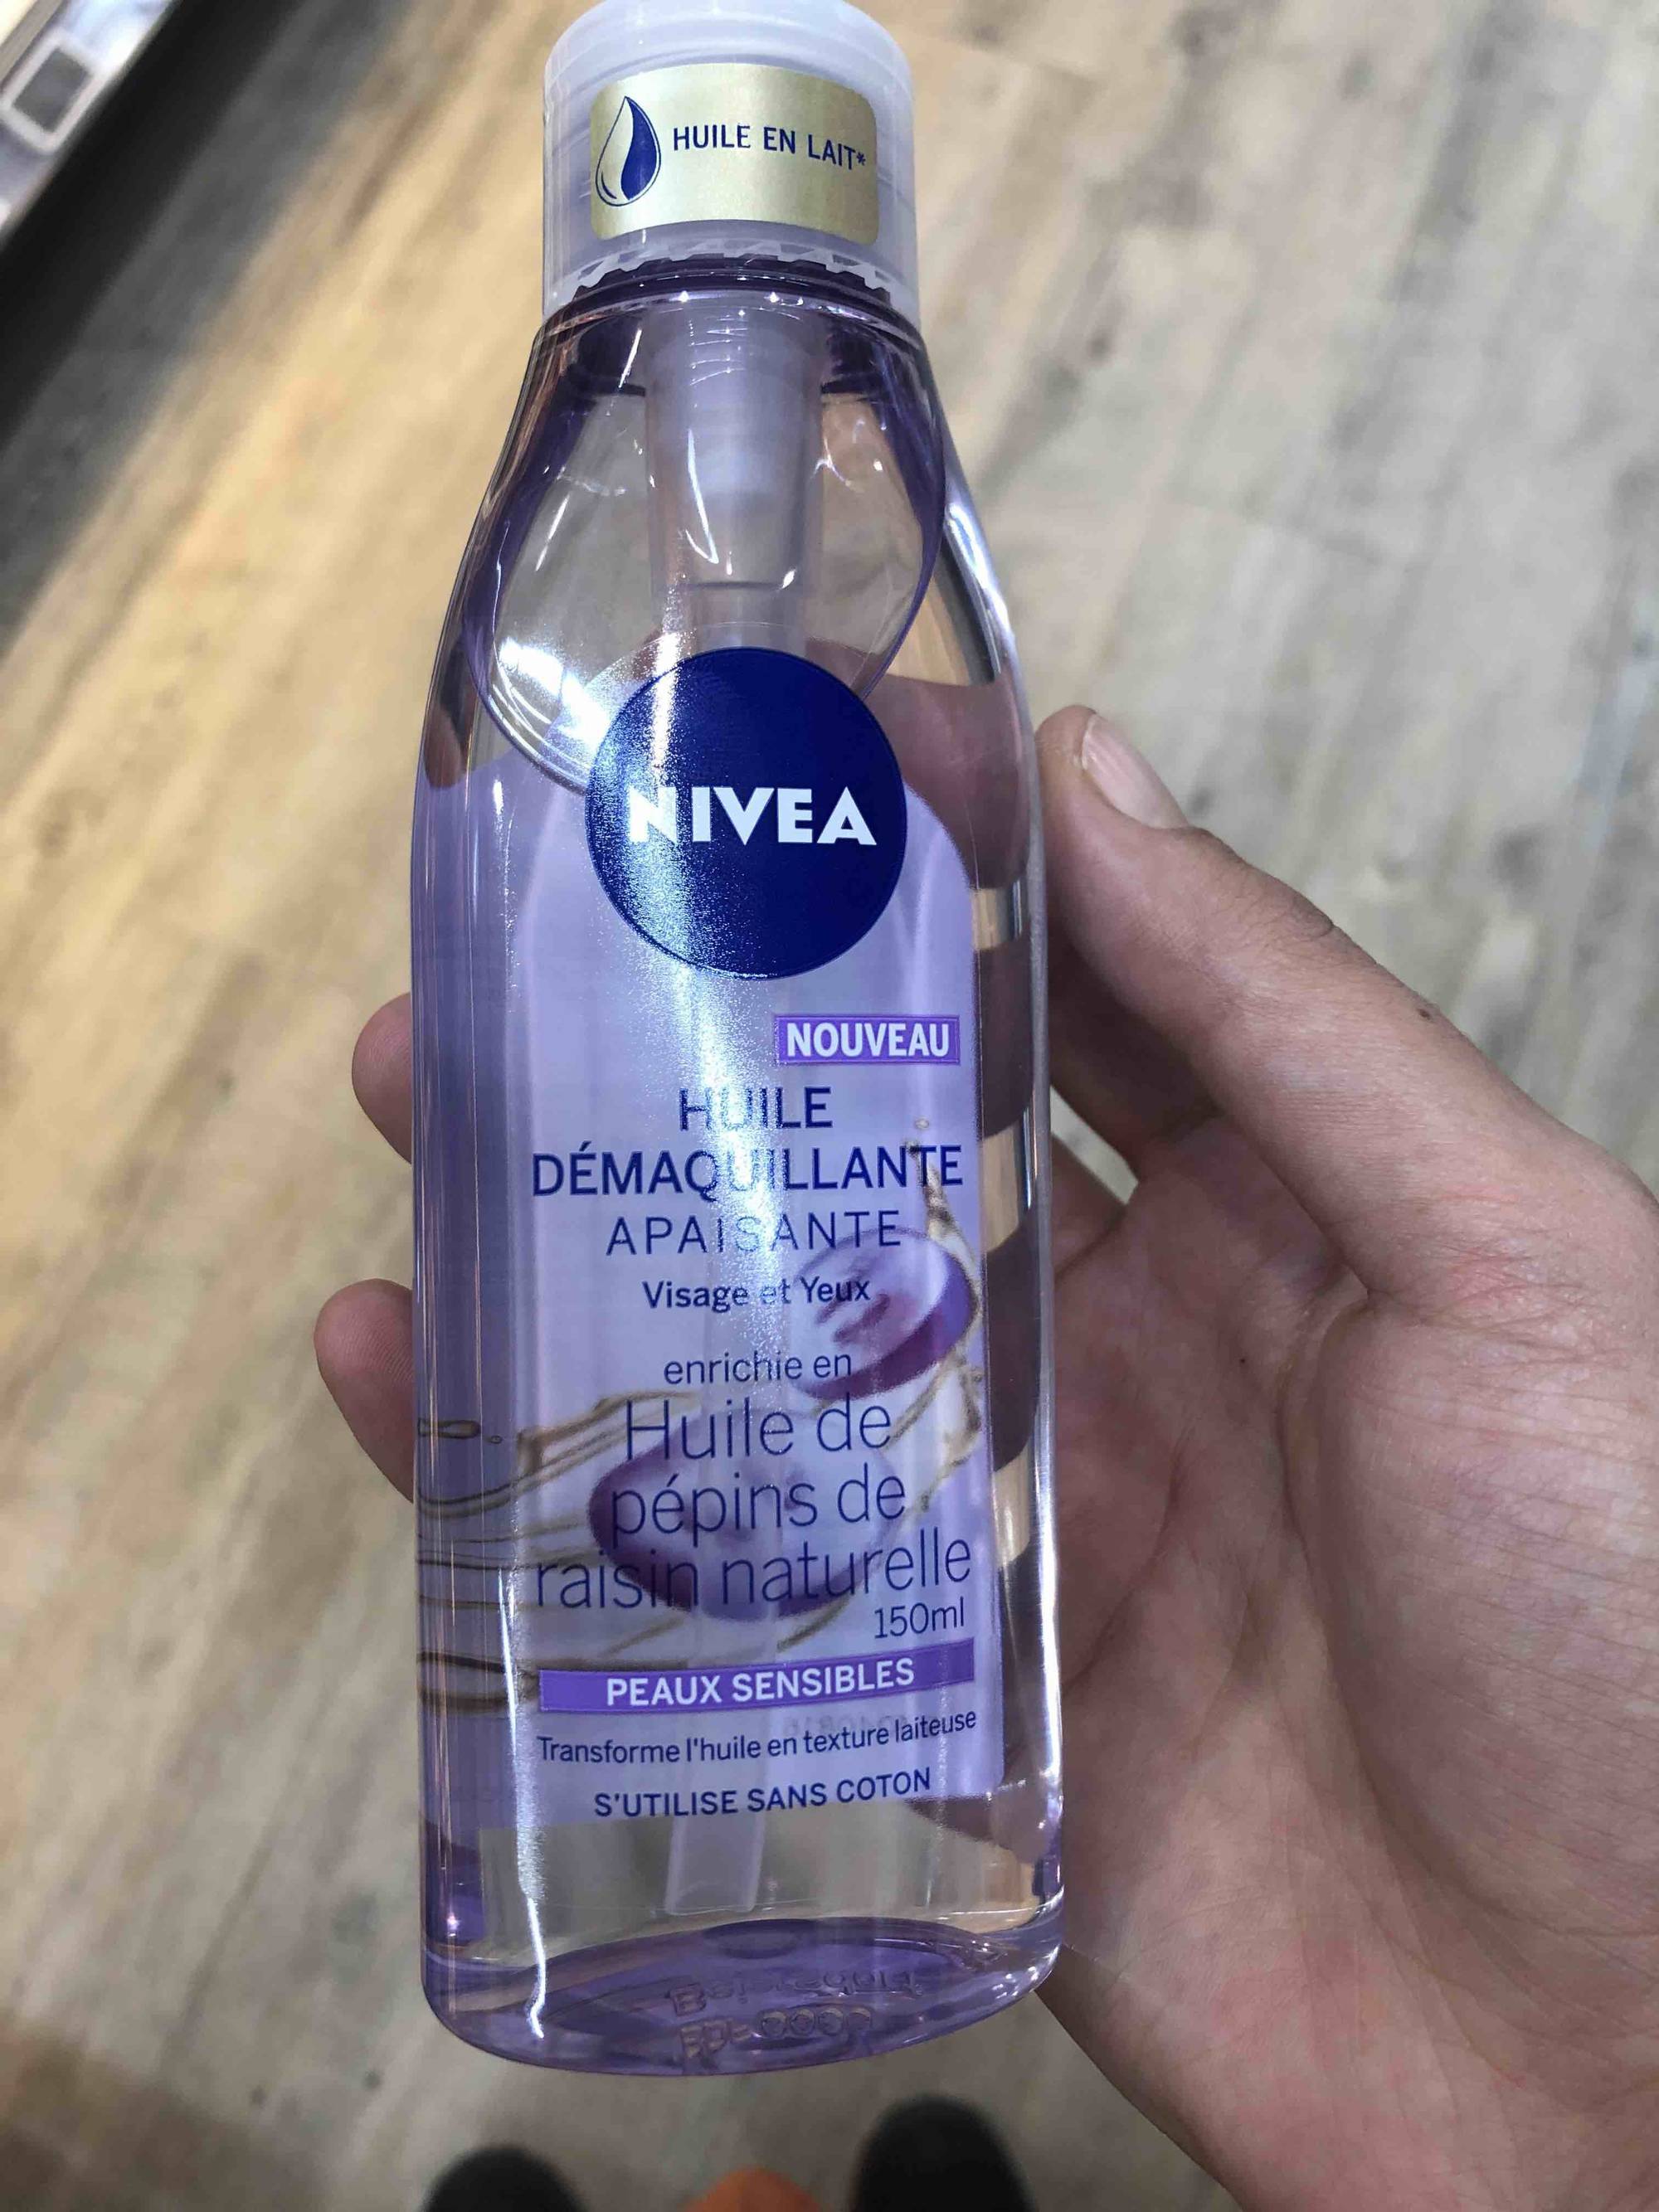 J'ai testé les nouvelles huiles démaquillantes de chez Nivea